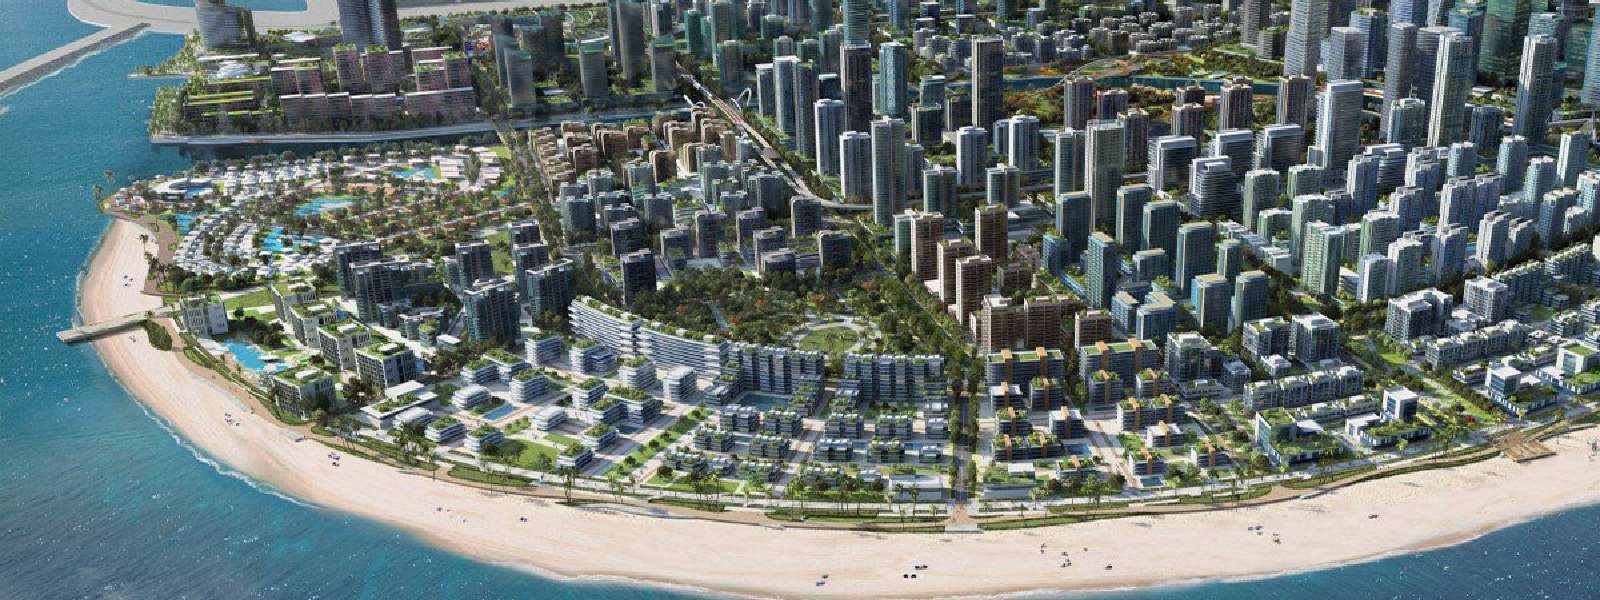 Sri Lanka to rebrand Port City in Abu Dhabi, Dubai